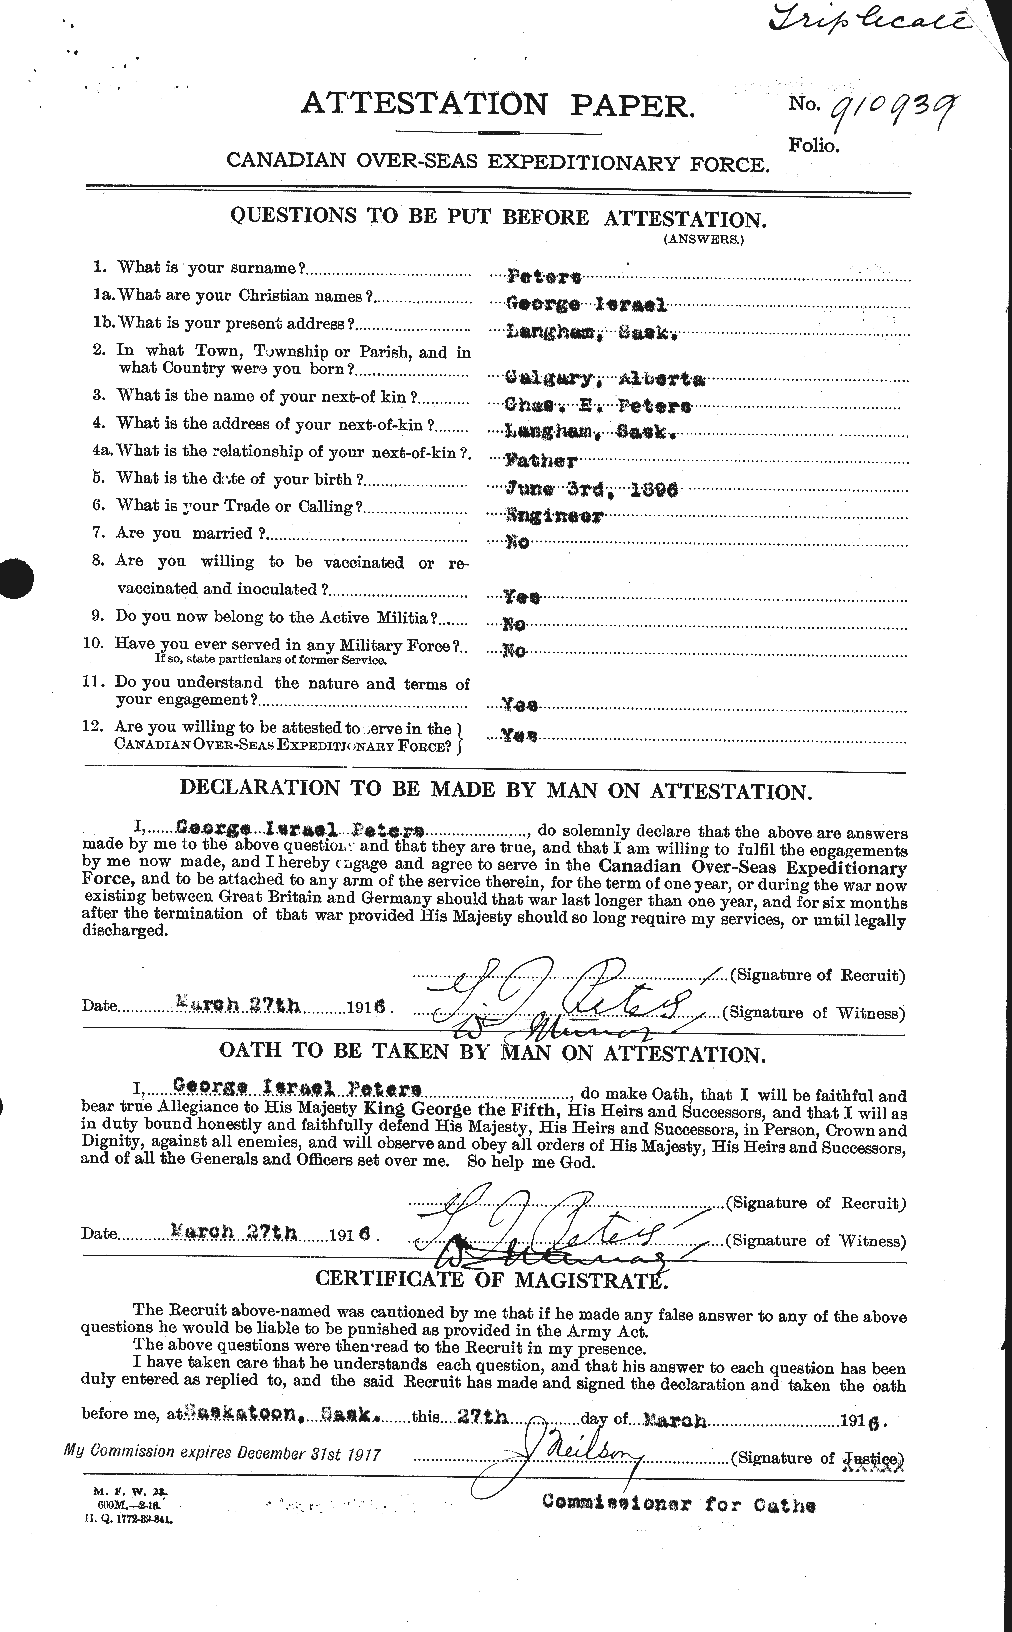 Dossiers du Personnel de la Première Guerre mondiale - CEC 575460a